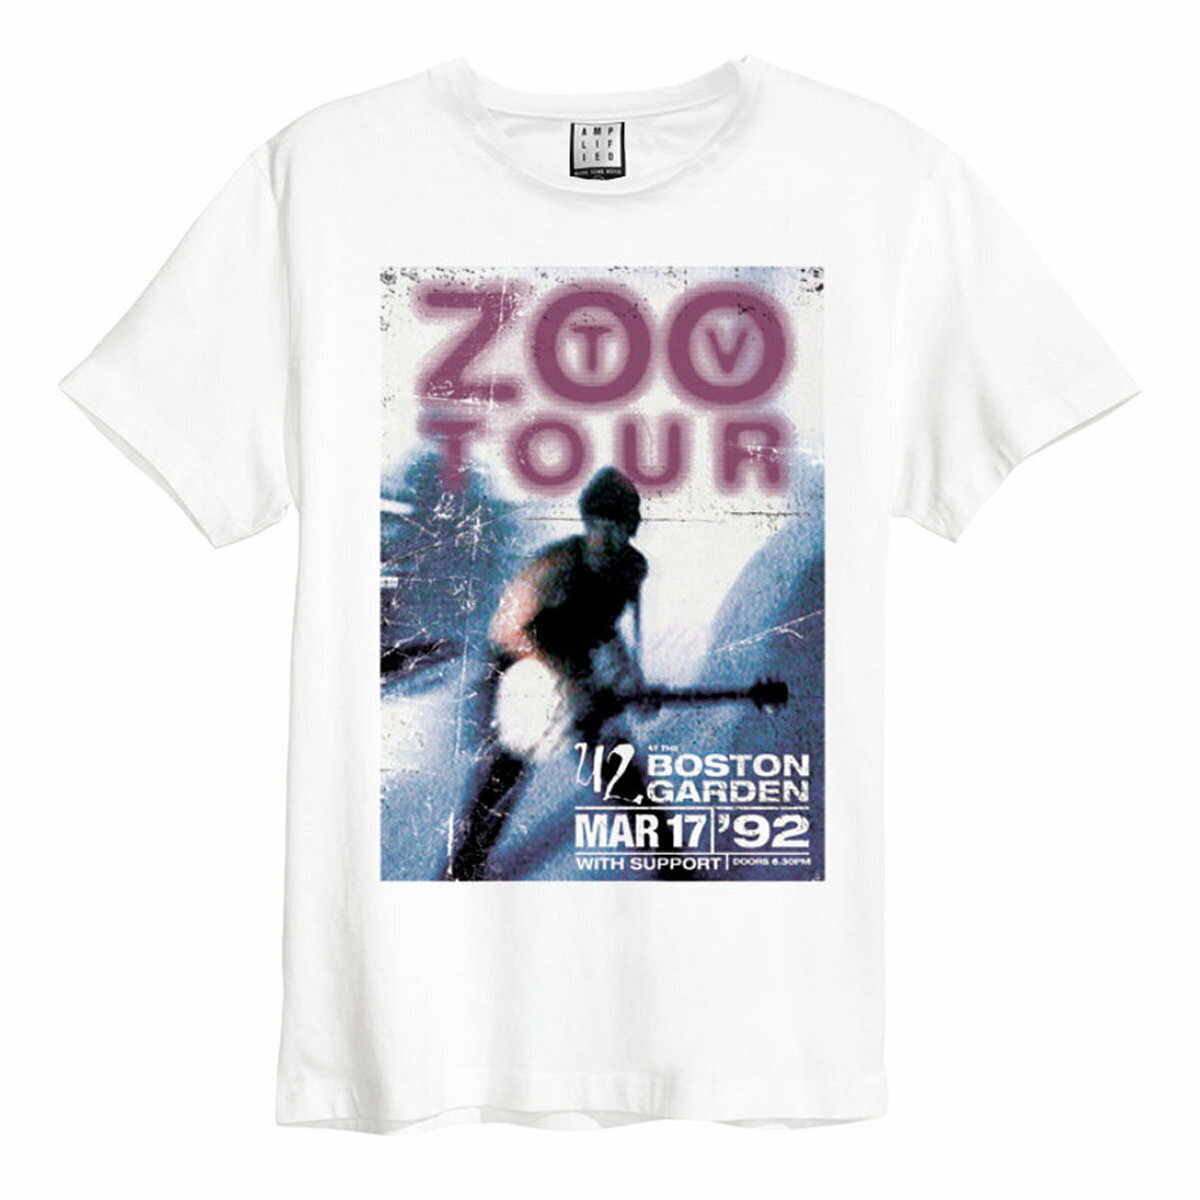 (アンプリファイド) Amplified オフィシャル商品 ユニセックス Zoo TV Tour U2 Tシャツ 半袖 カットソー トップス 【海外通販】